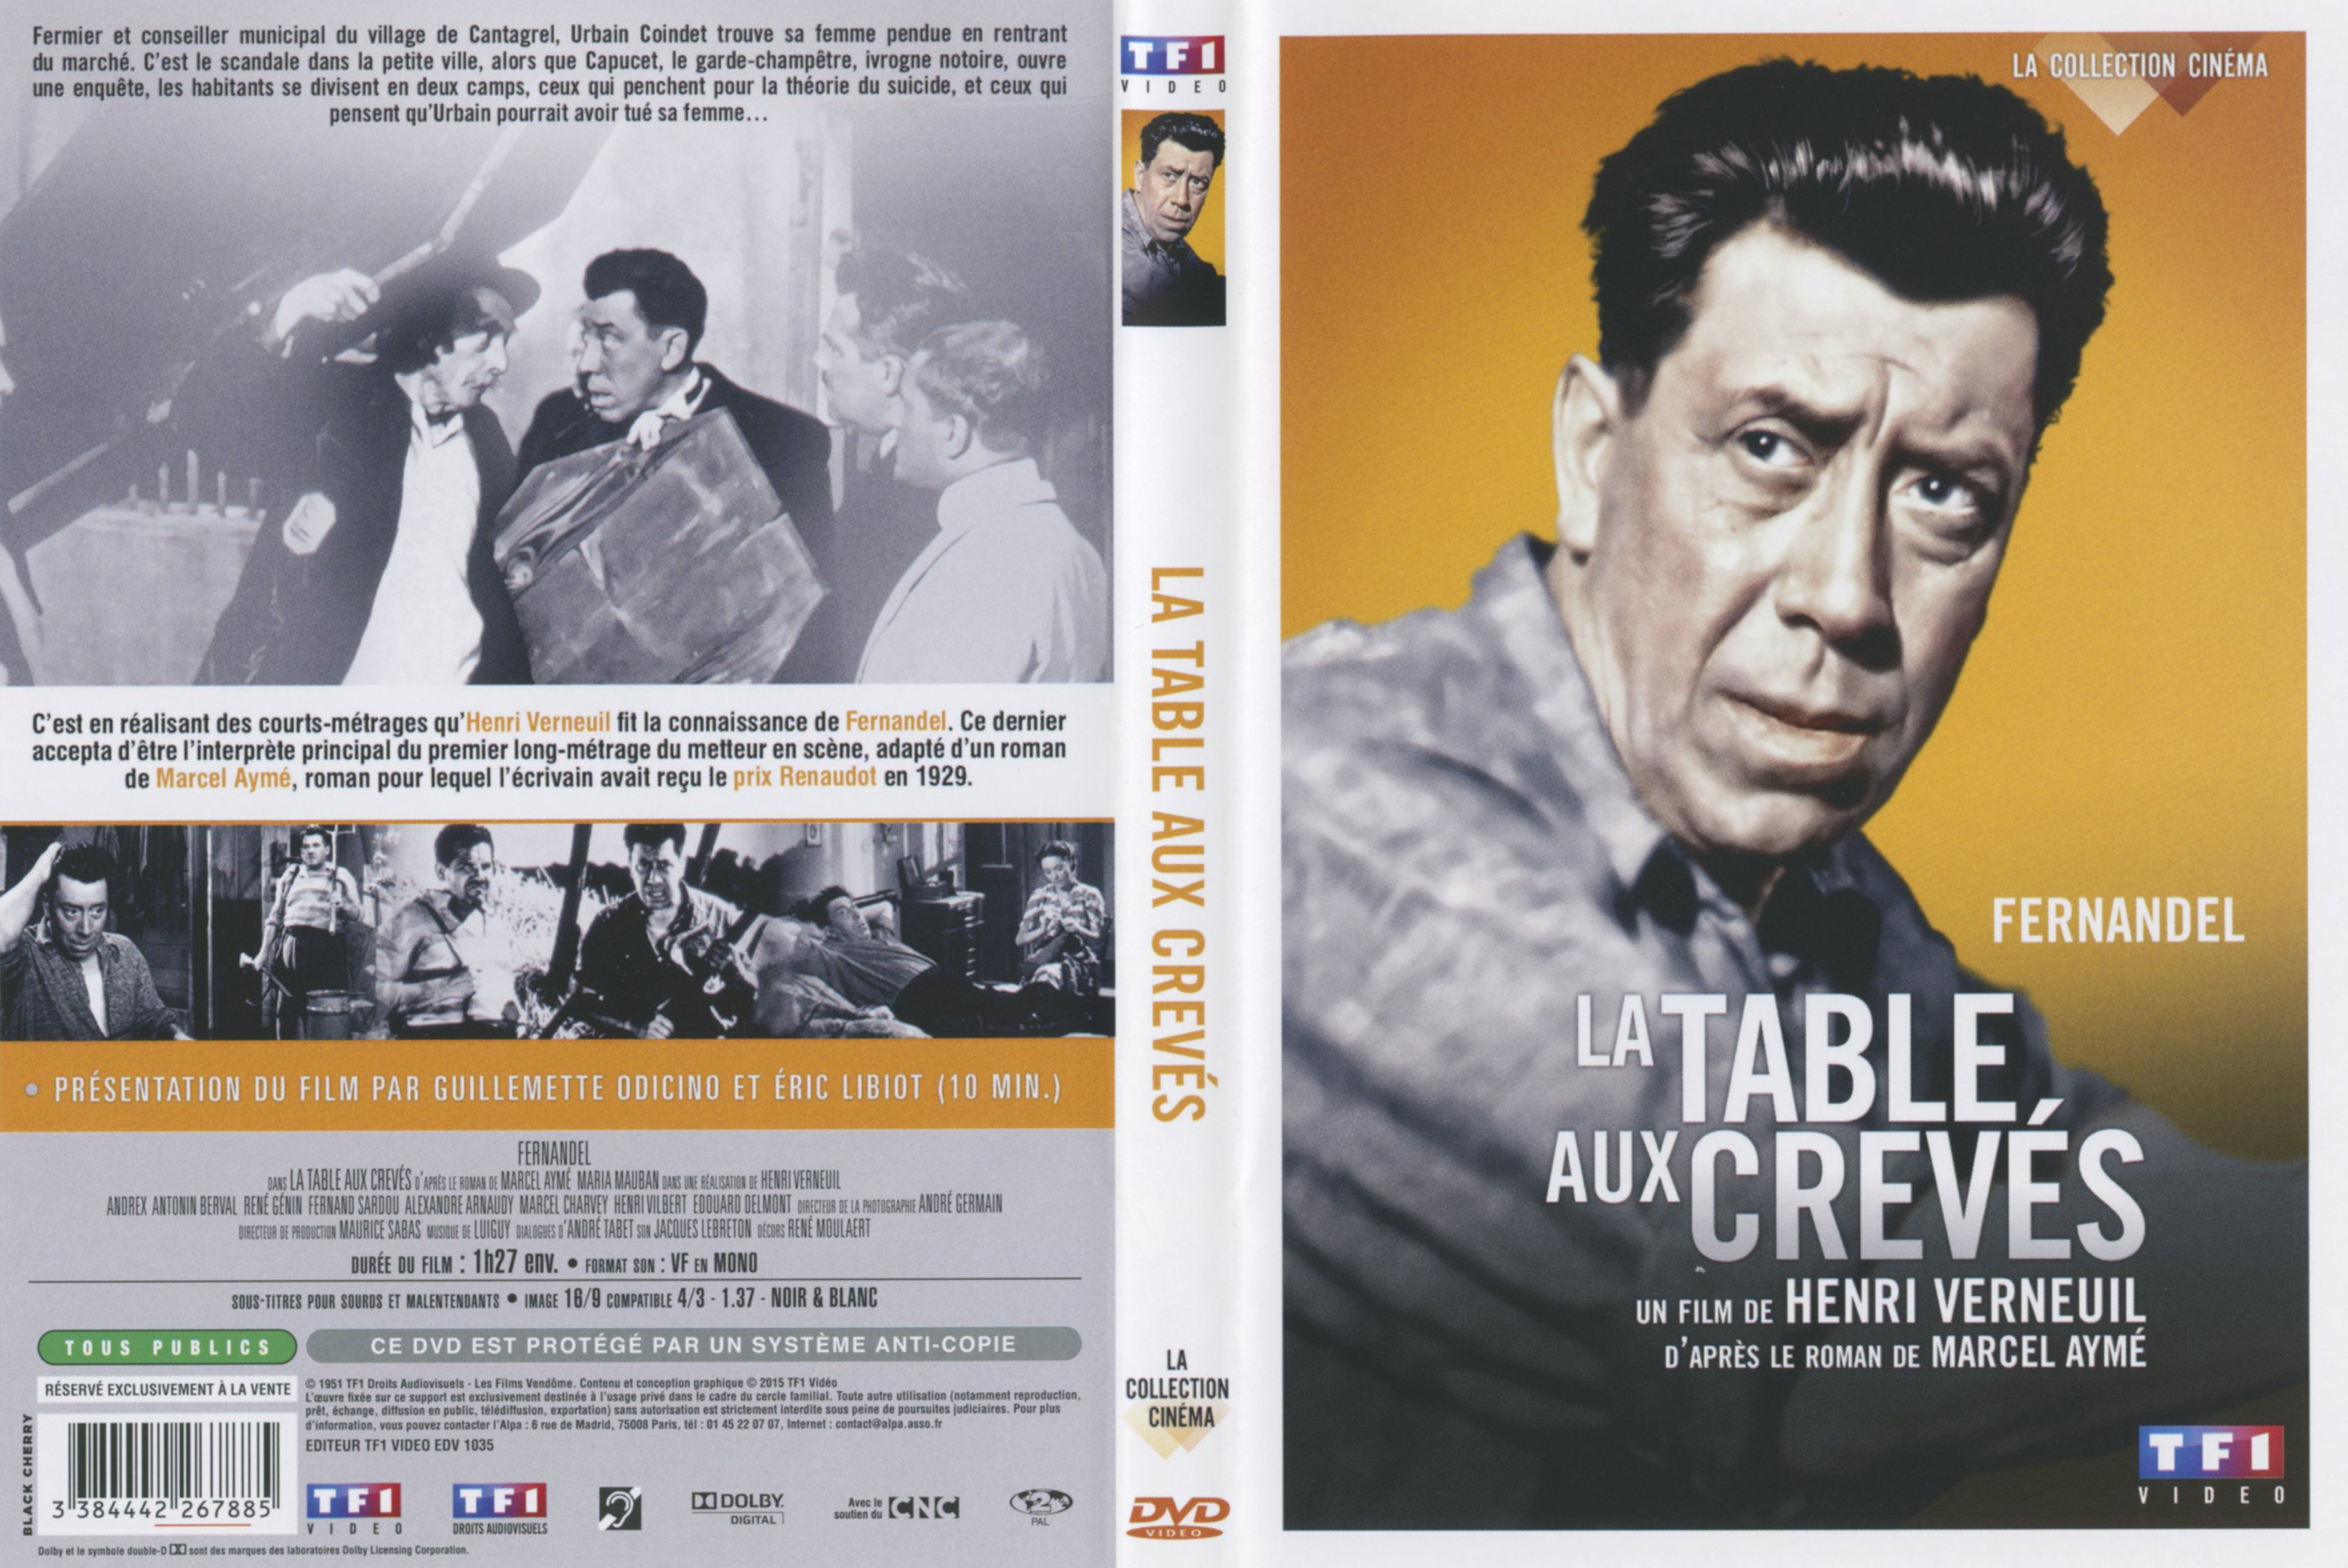 Jaquette DVD La table aux crevs v2